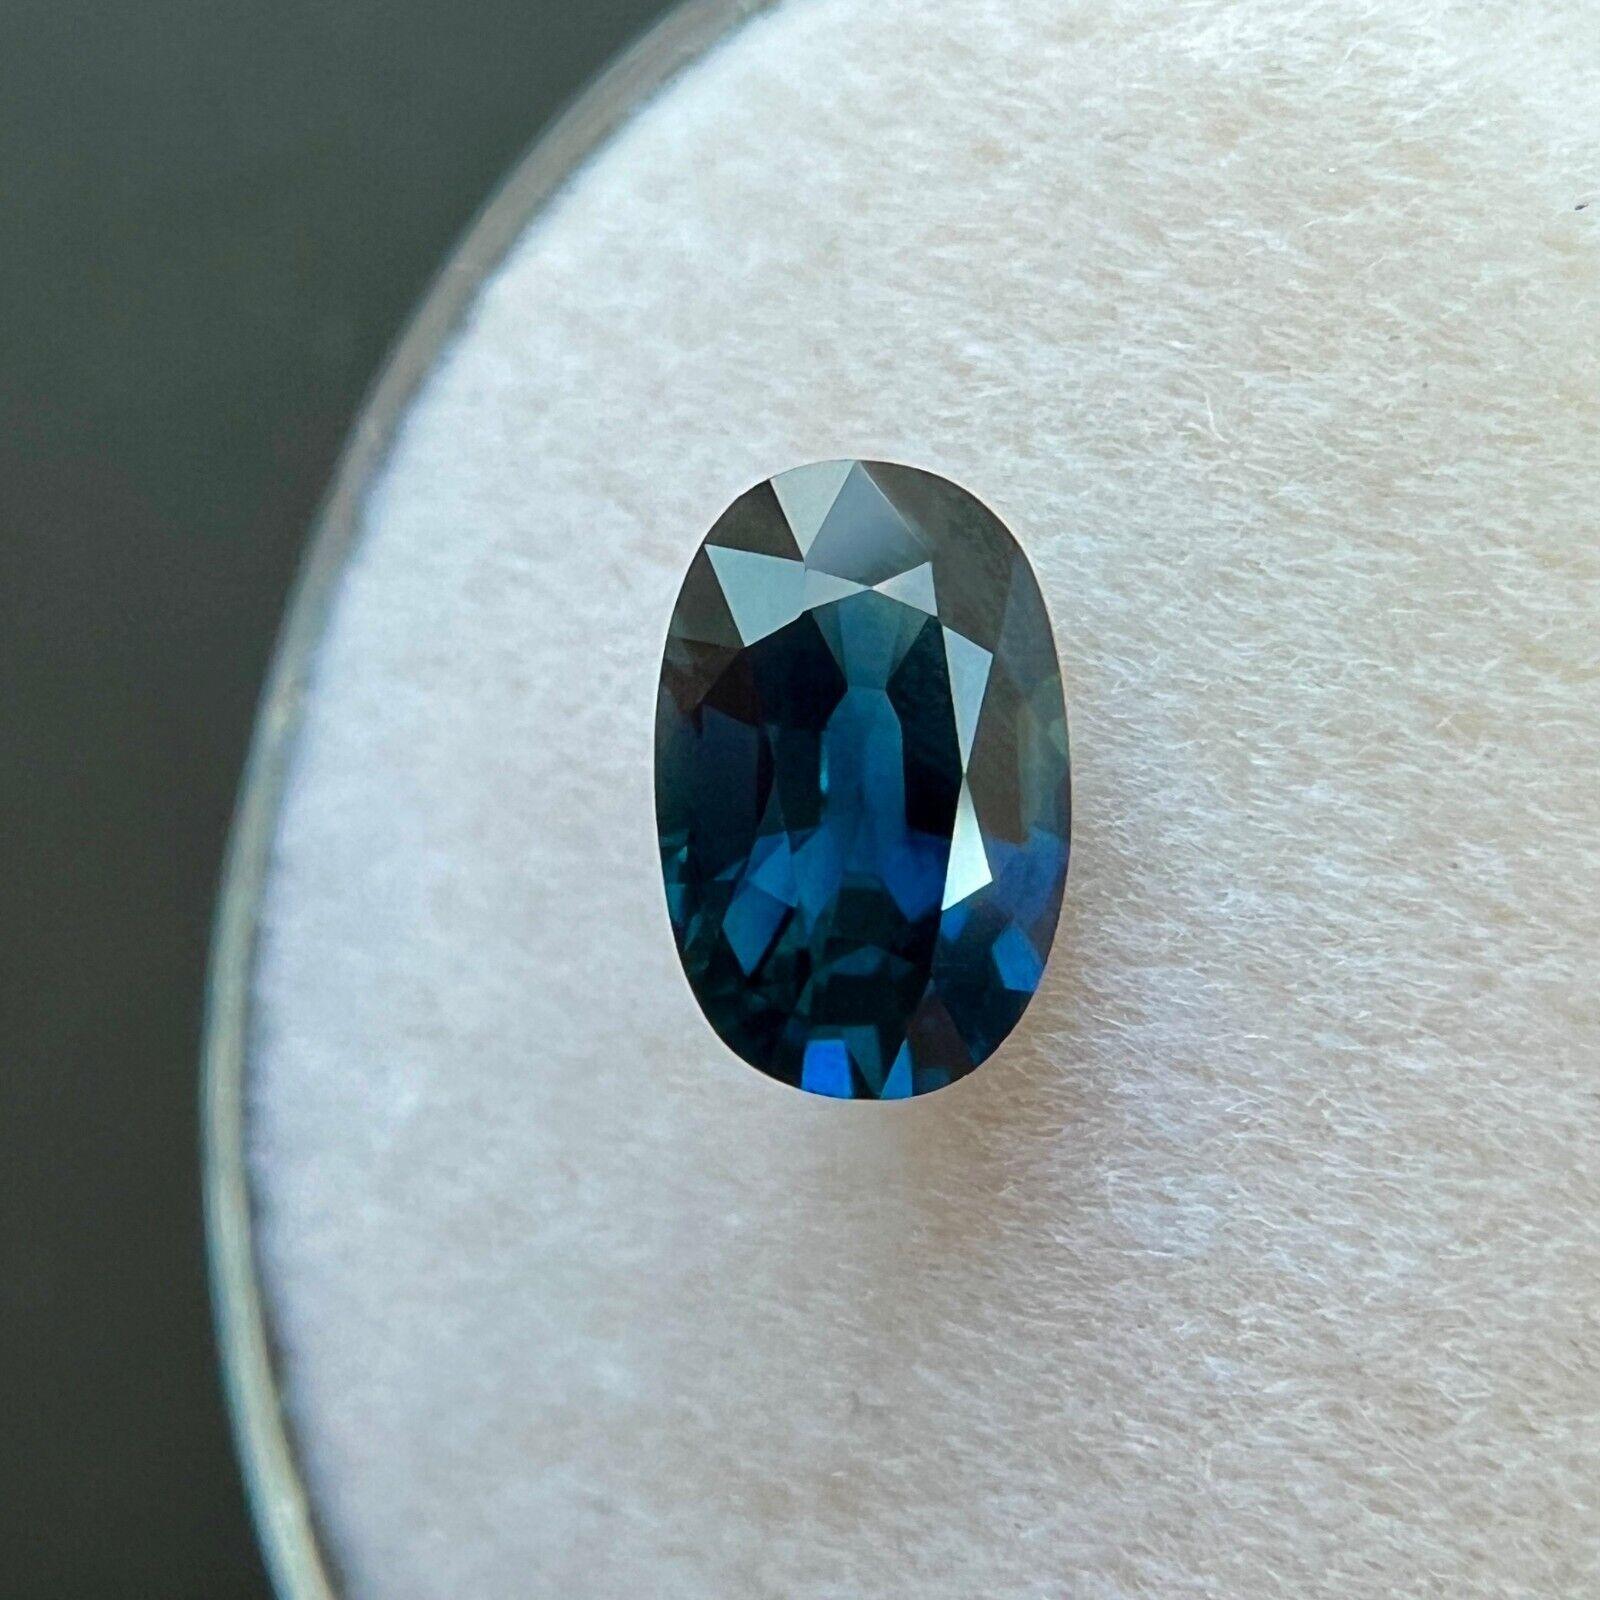 Saphir bleu profond de 1,14 carat certifié GIA, taille ovale de 7,5 x 4,9 mm

Saphir bleu profond certifié GIA Pierre précieuse.
Saphir de 1,14 carat d'une belle couleur bleu foncé et d'une excellente clarté, une pierre très propre. VS.
Ce saphir